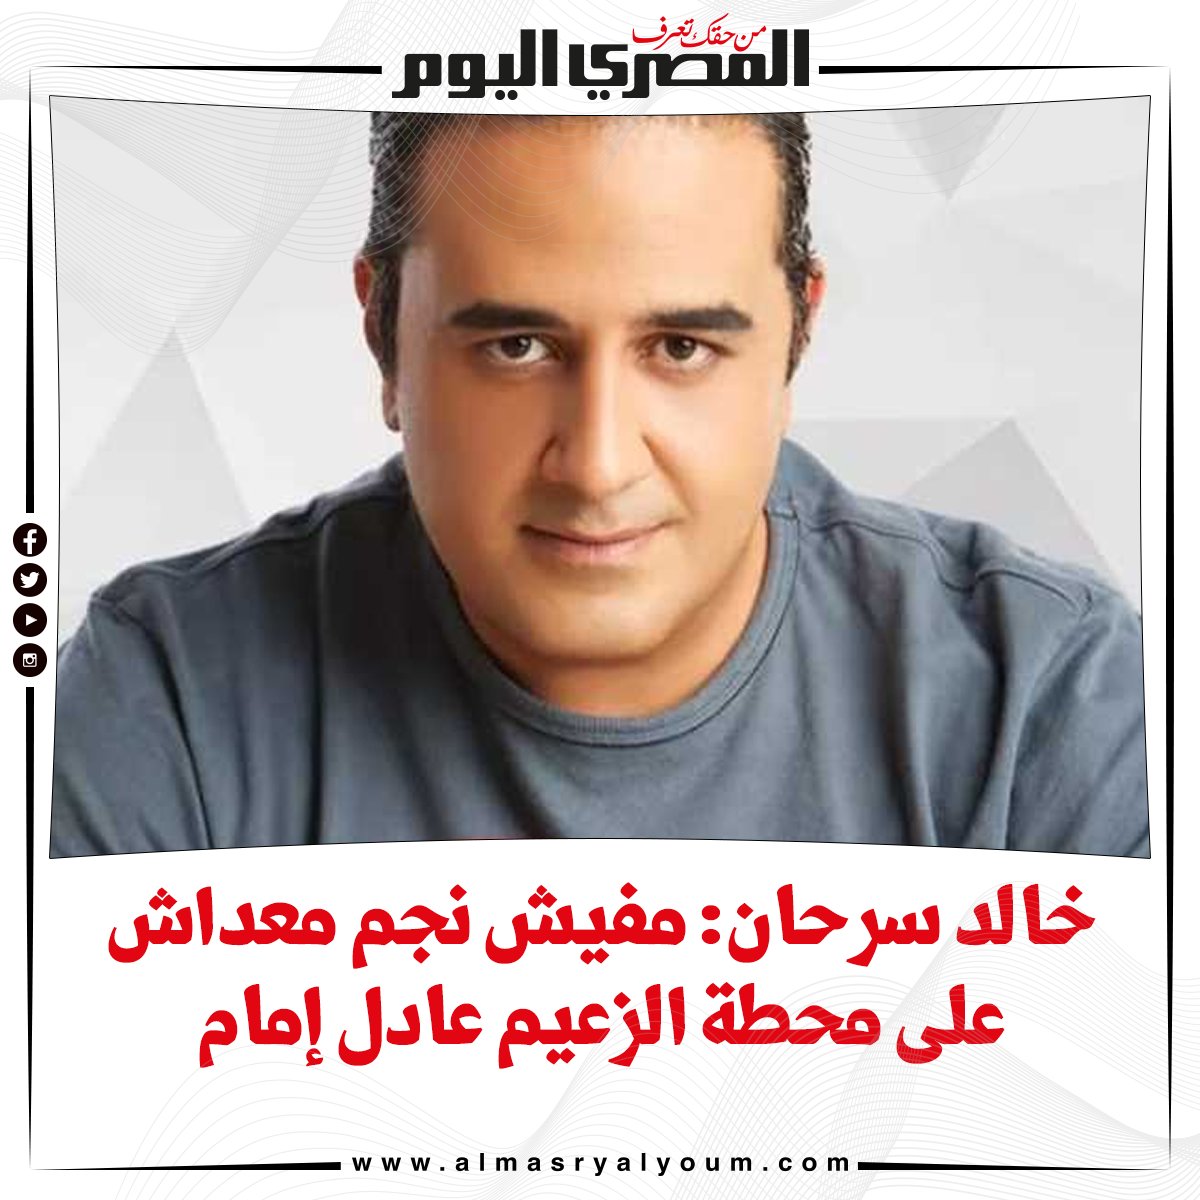 خالد سرحان مفيش نجم معداش على محطة الزعيم عادل إمام